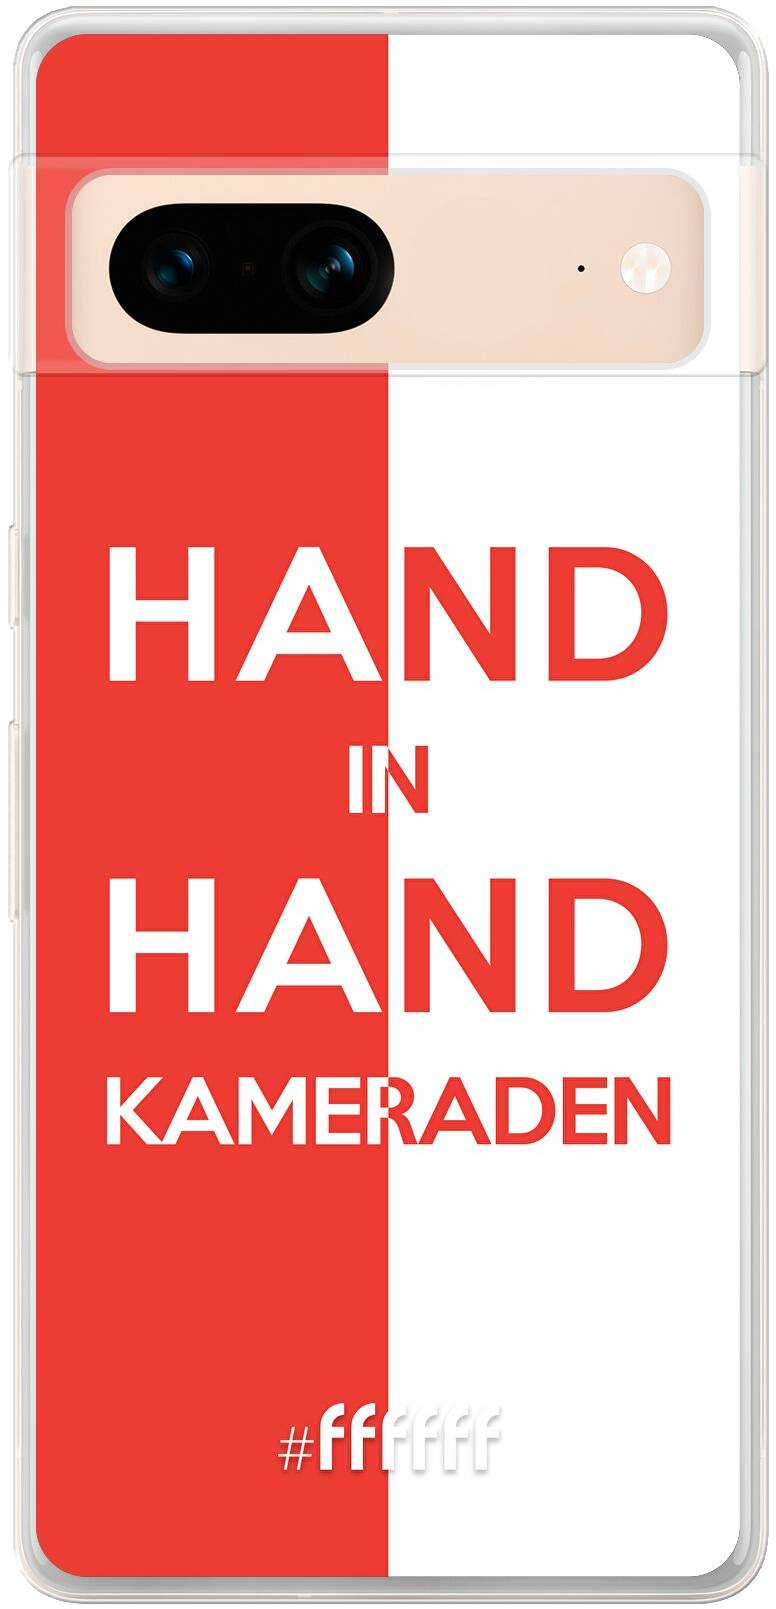 Feyenoord - Hand in hand, kameraden Pixel 7